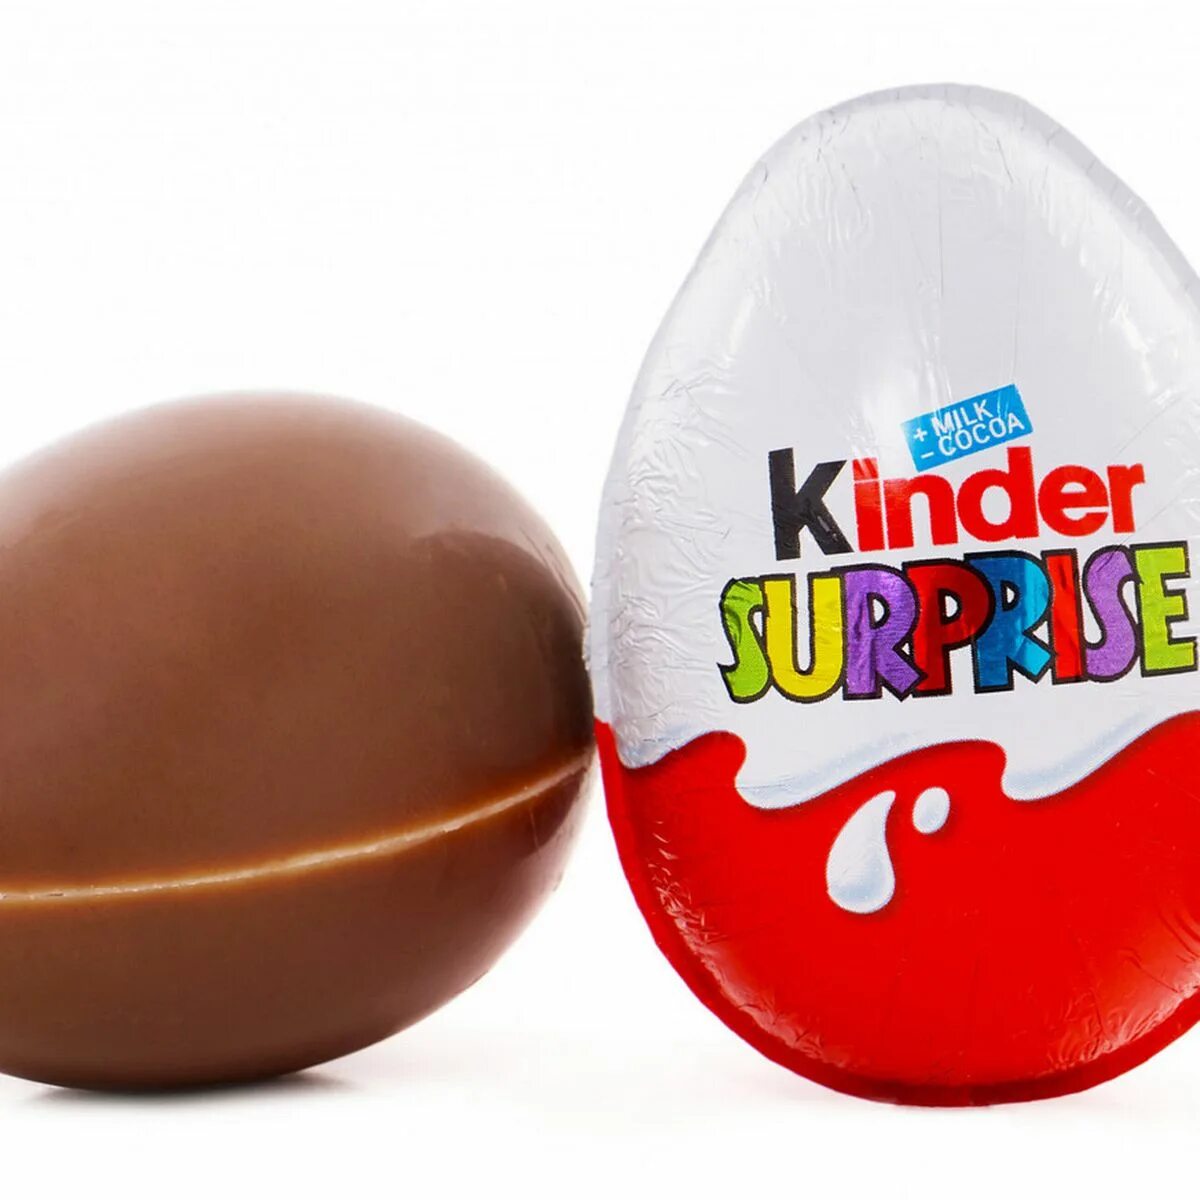 Читать киндер. Киндер сюрприз. Kinder сюрприз. Яйцо Киндер сюрприз. Шоколадное яйцо Киндер сюрприз.